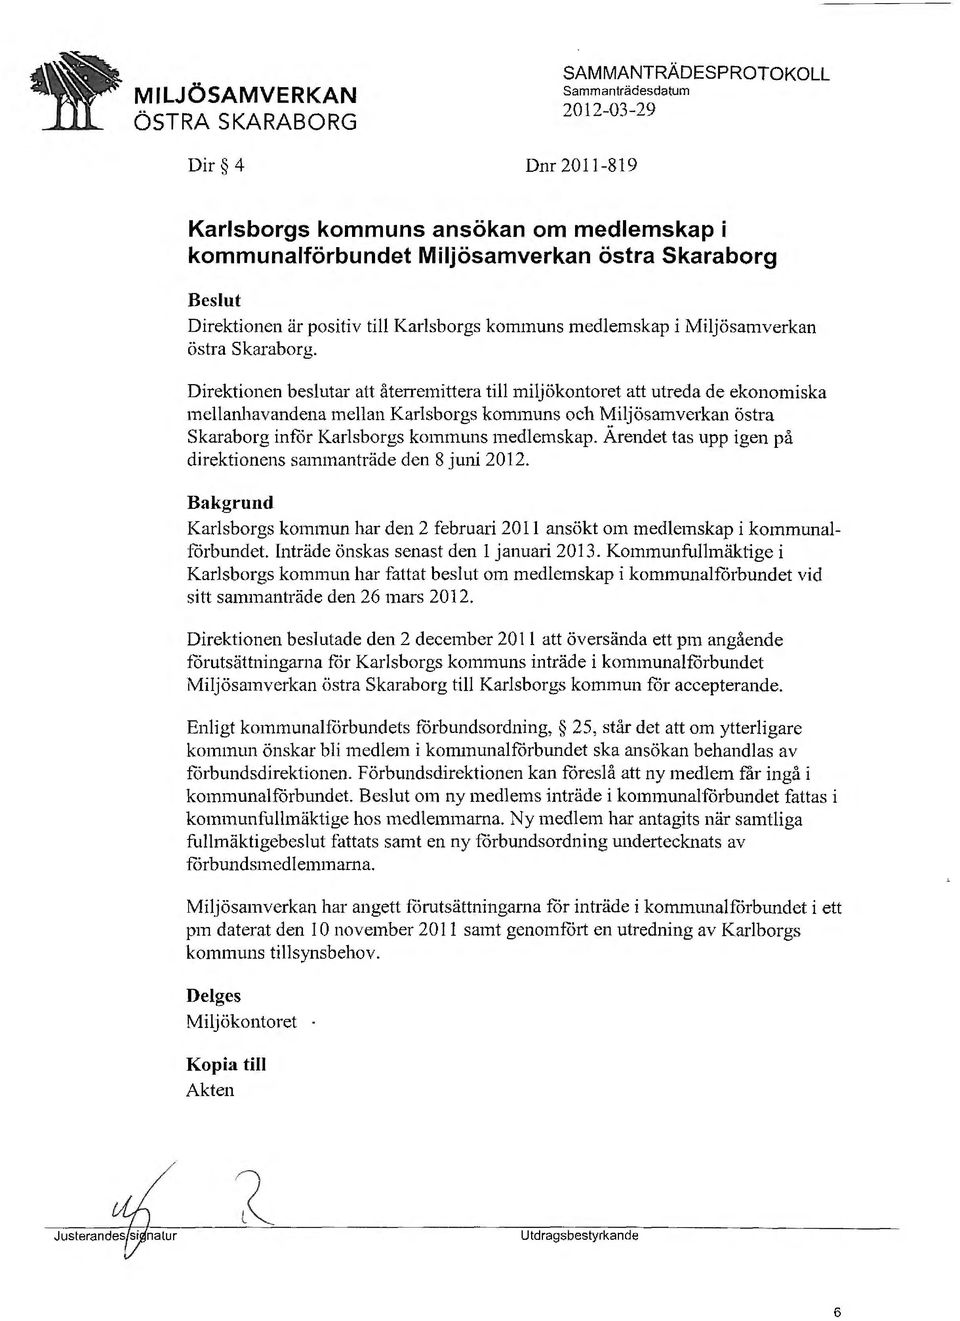 Direktionen beslutar att återremittera till miljökontoret att utreda de ekonomiska mellanhavandena mellan Karlsborgs kommuns och Miljösamverkan östra Skaraborg inför Karlsborgs kommuns medlemskap.